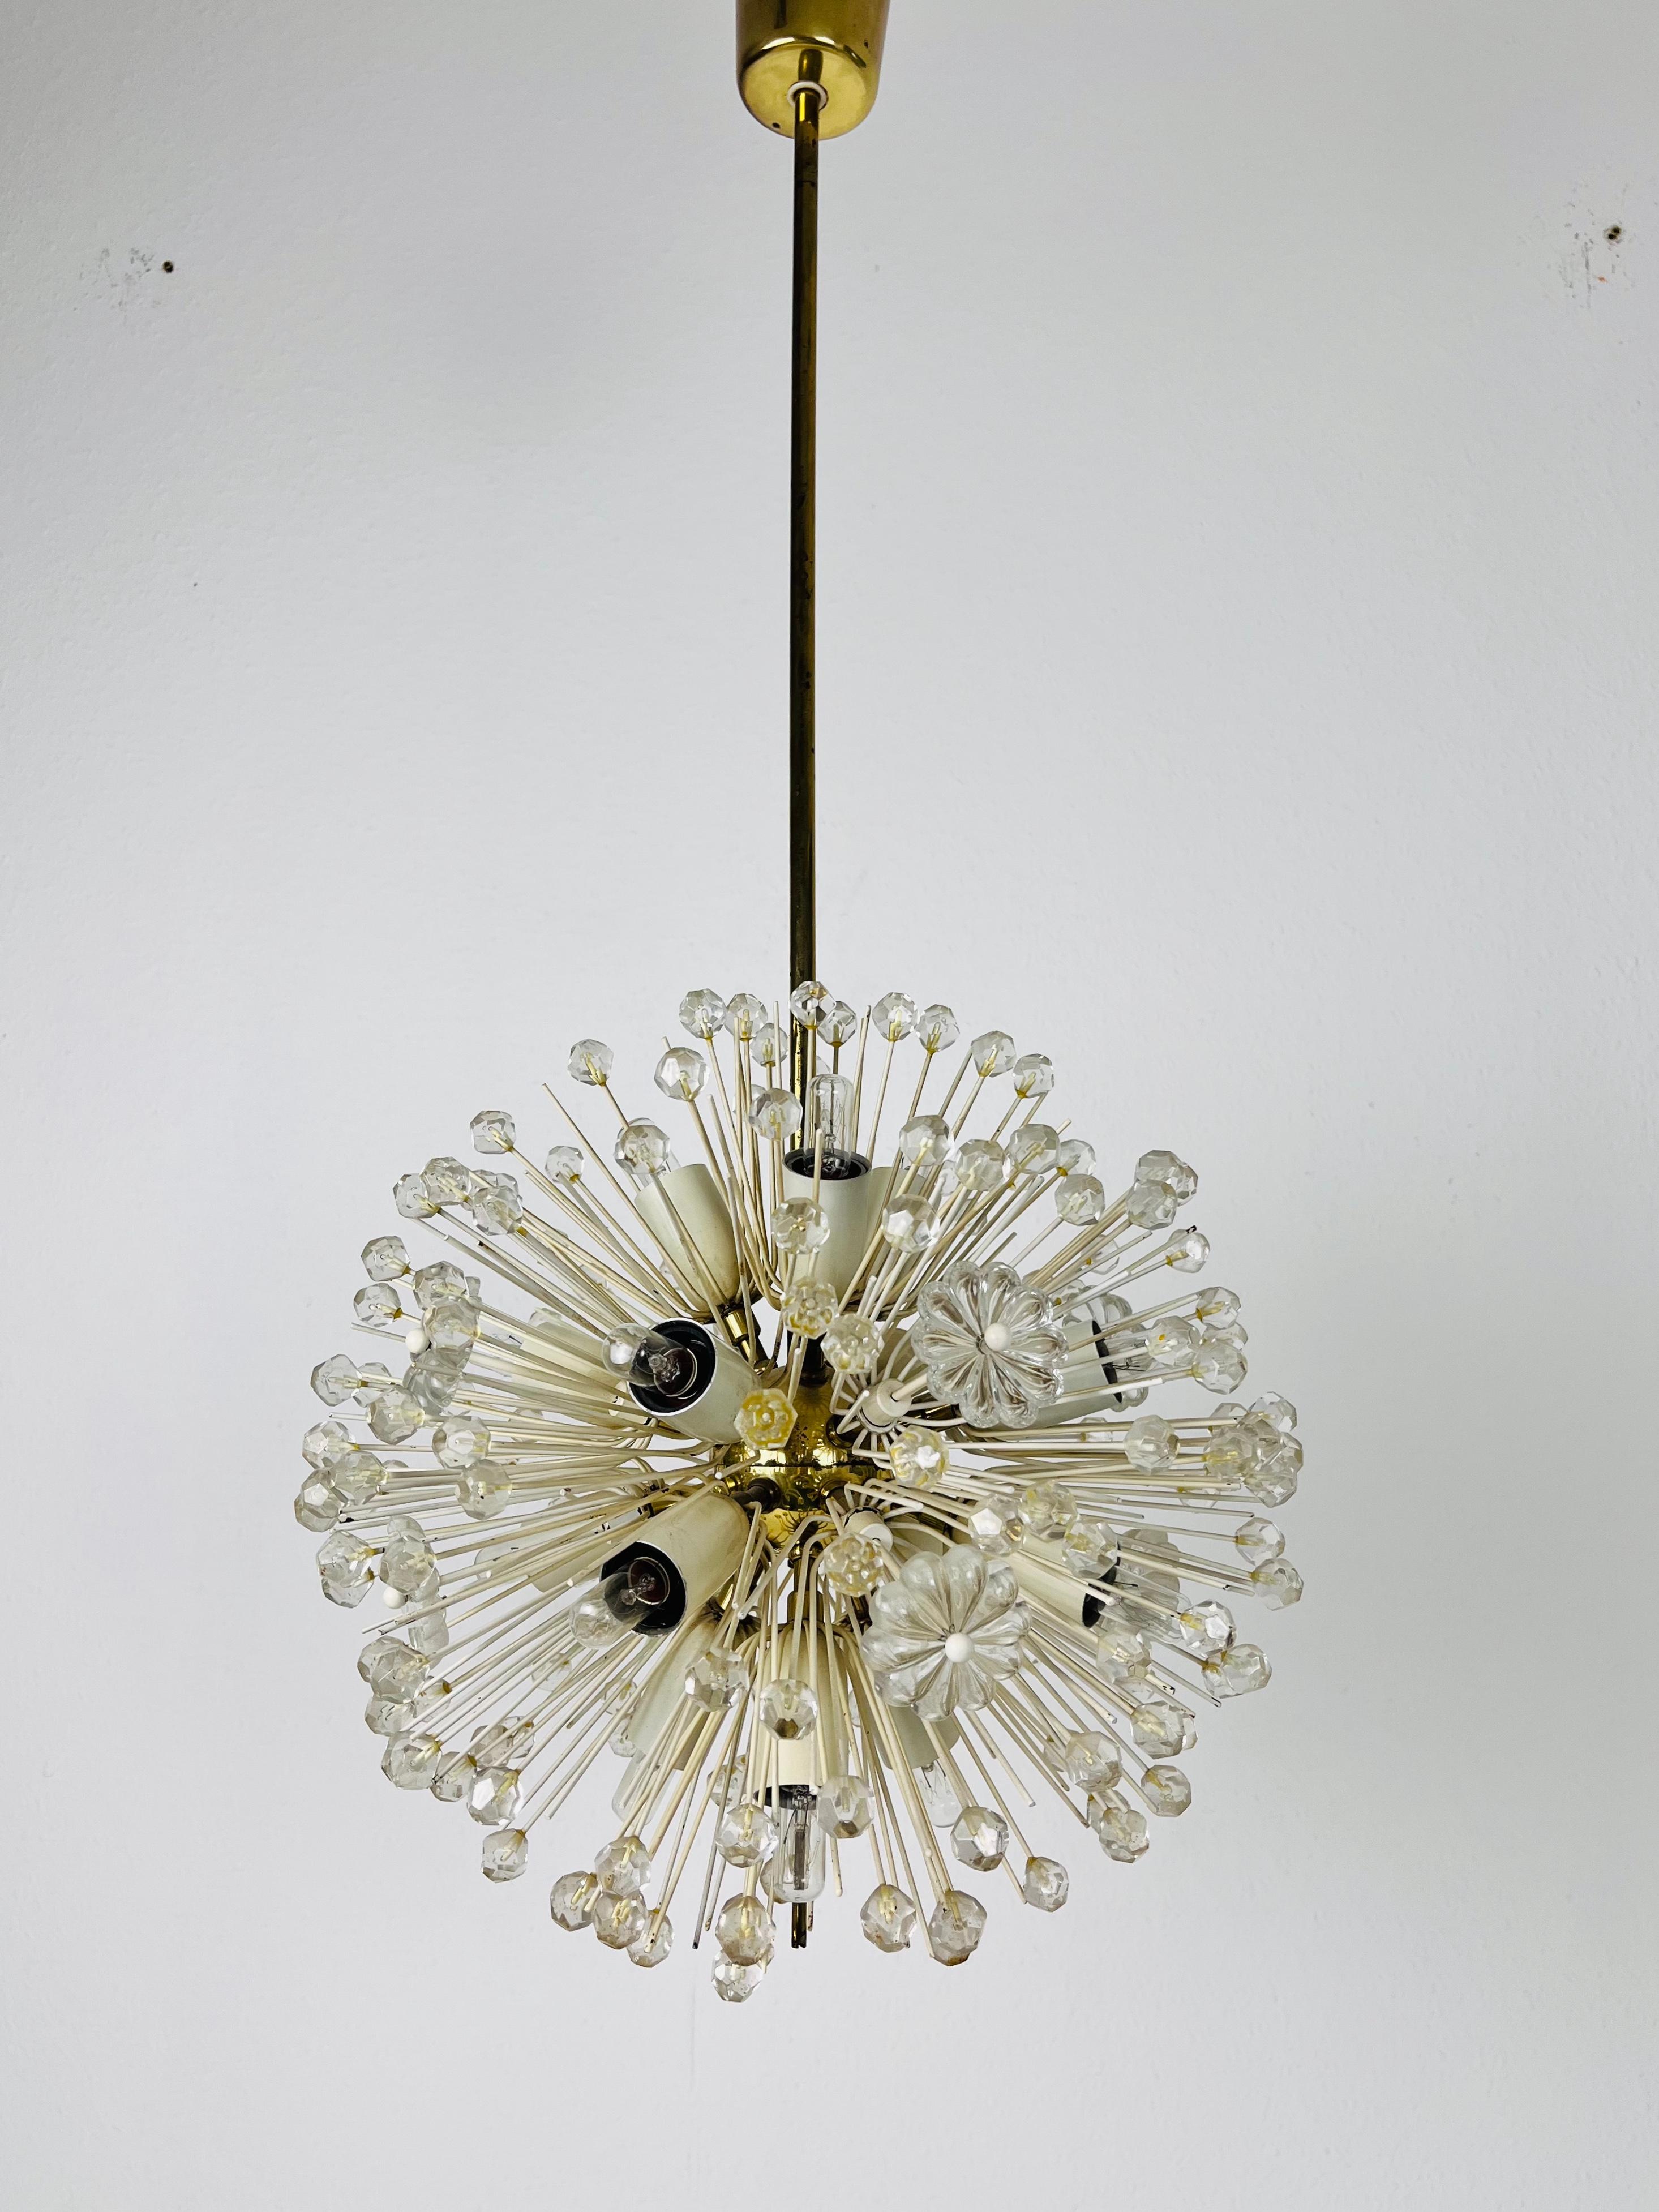 Un magnifique lustre réalisé par Emil Stejnar pour Rupert Nikoll, en Autriche, dans les années 1960. L'éclairage a un design midcentury étonnant. Il est composé de laiton et de petits verres. Le luminaire présente un très beau motif floral de style